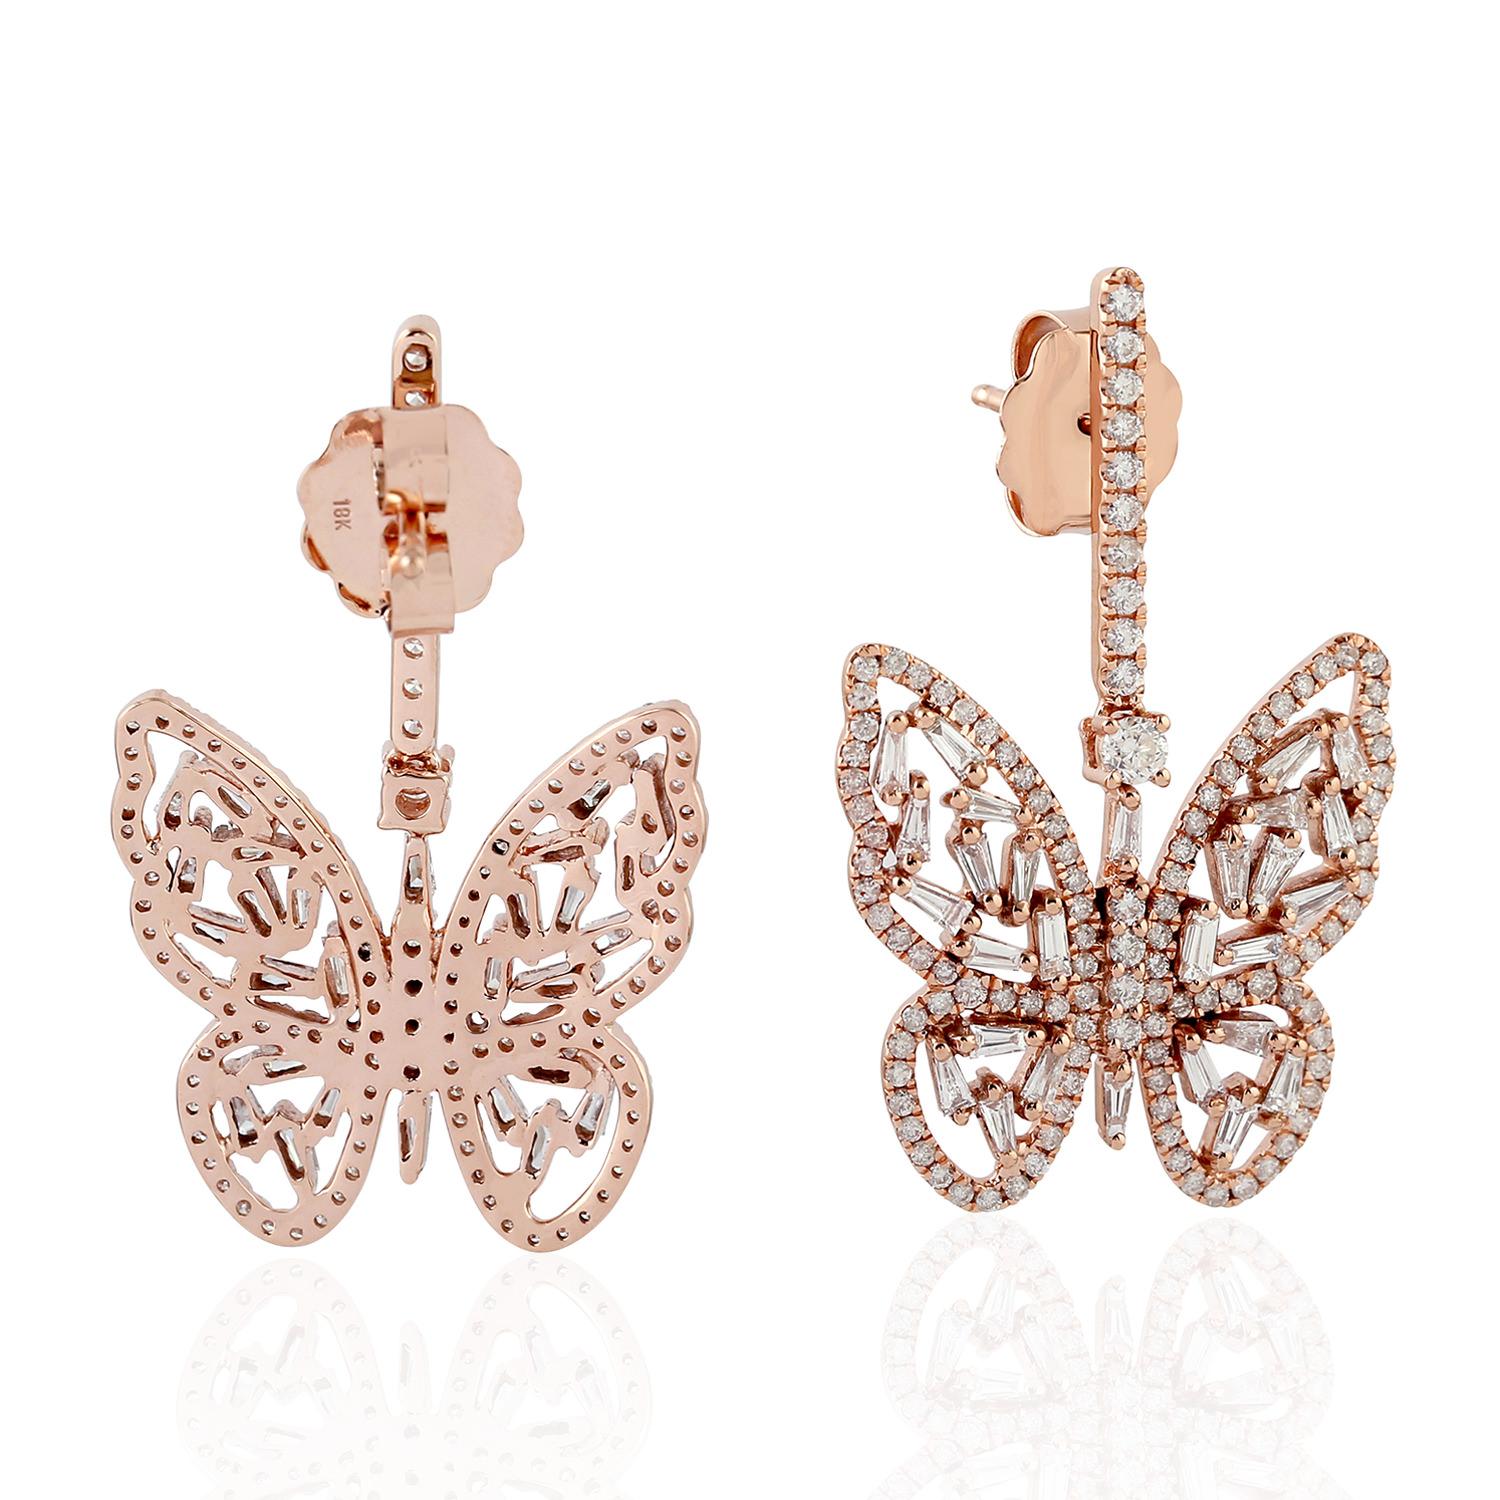 Art Deco Butterfly Shaped 18k Rose Gold Dangle Earrings Set In Diamonds For Sale